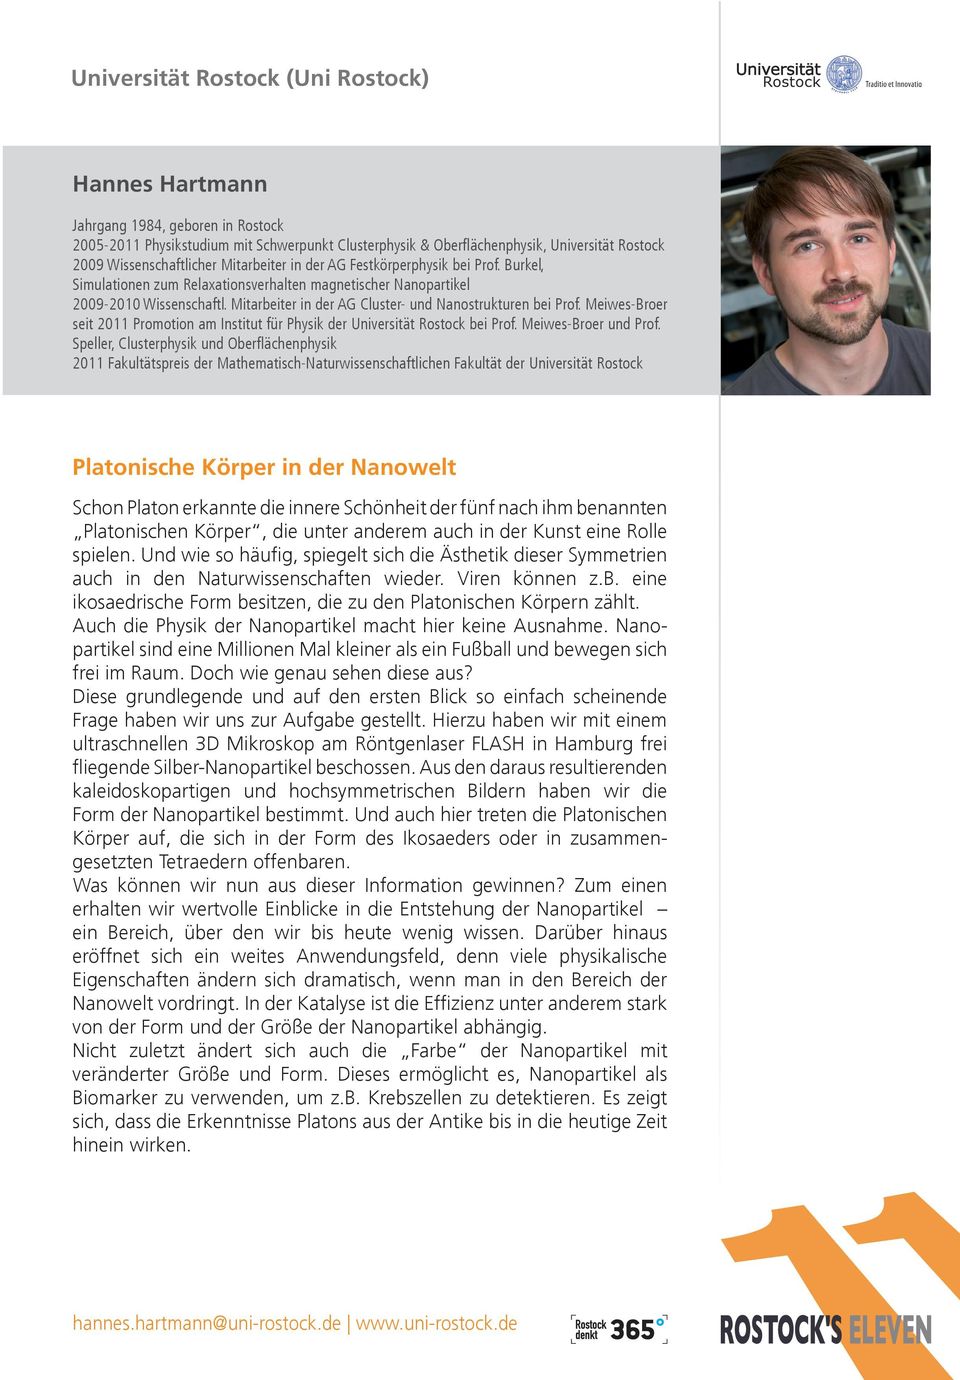 Meiwes-Broer seit 2011 Promotion am Institut für Physik der Universität Rostock bei Prof. Meiwes-Broer und Prof.